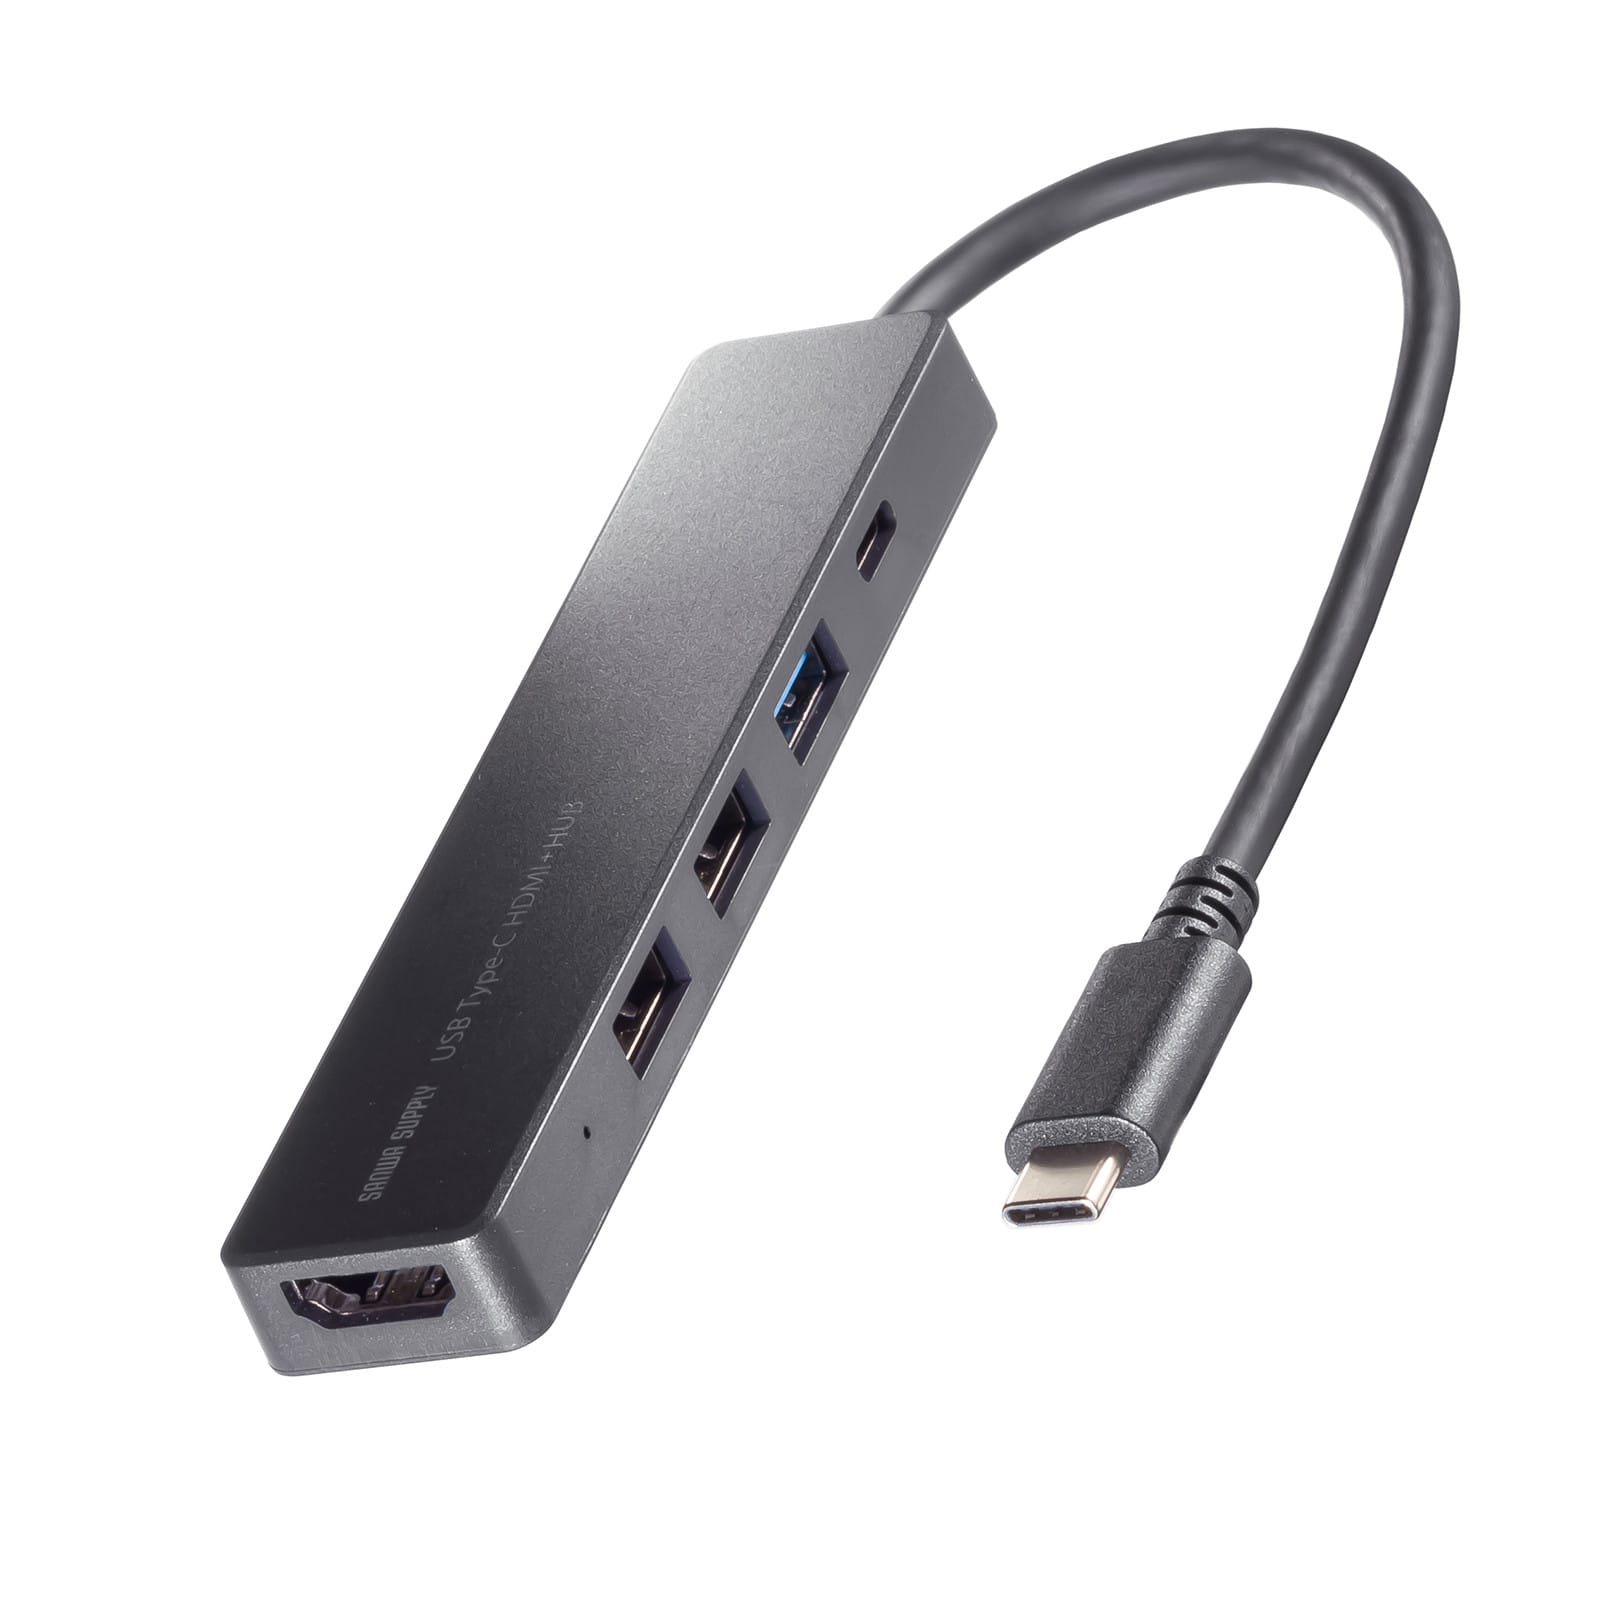 サンワサプライ、5-in-1 USBハブを発売